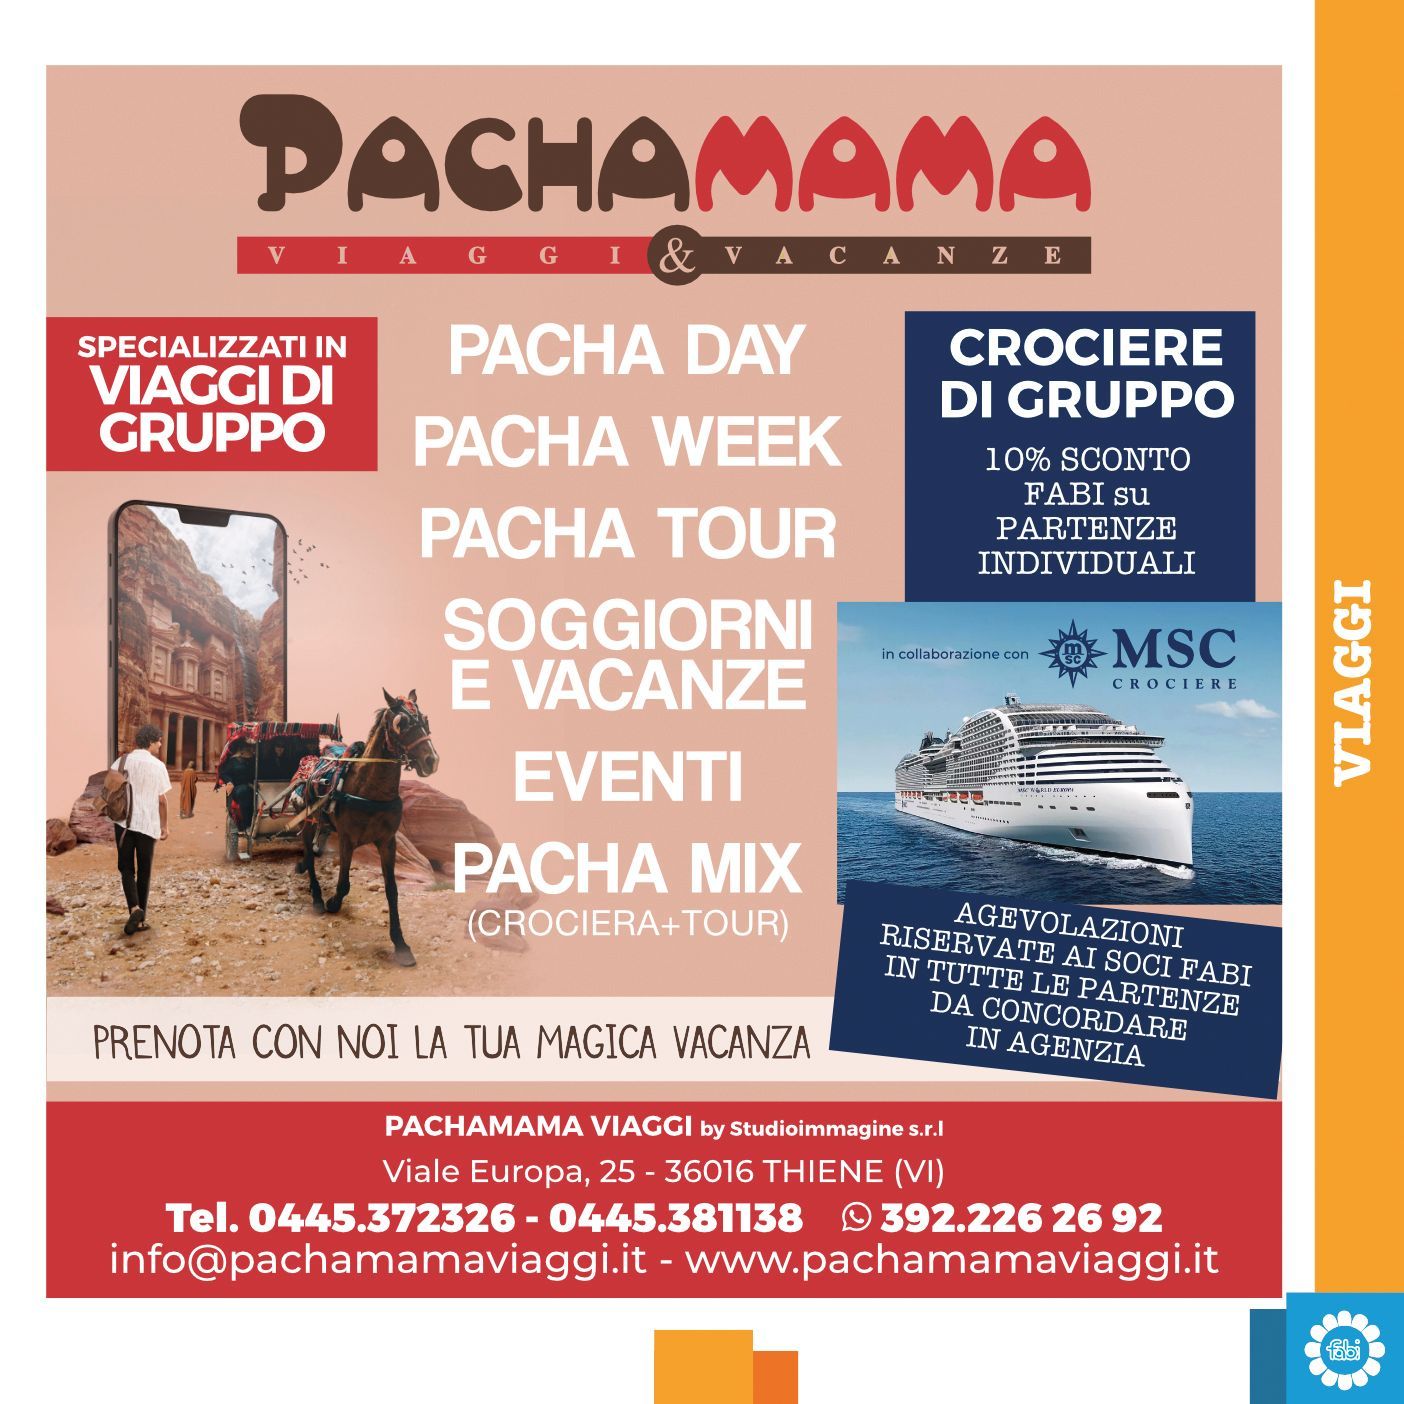 Una pubblicità di pachamama mostra una carrozza trainata da cavalli